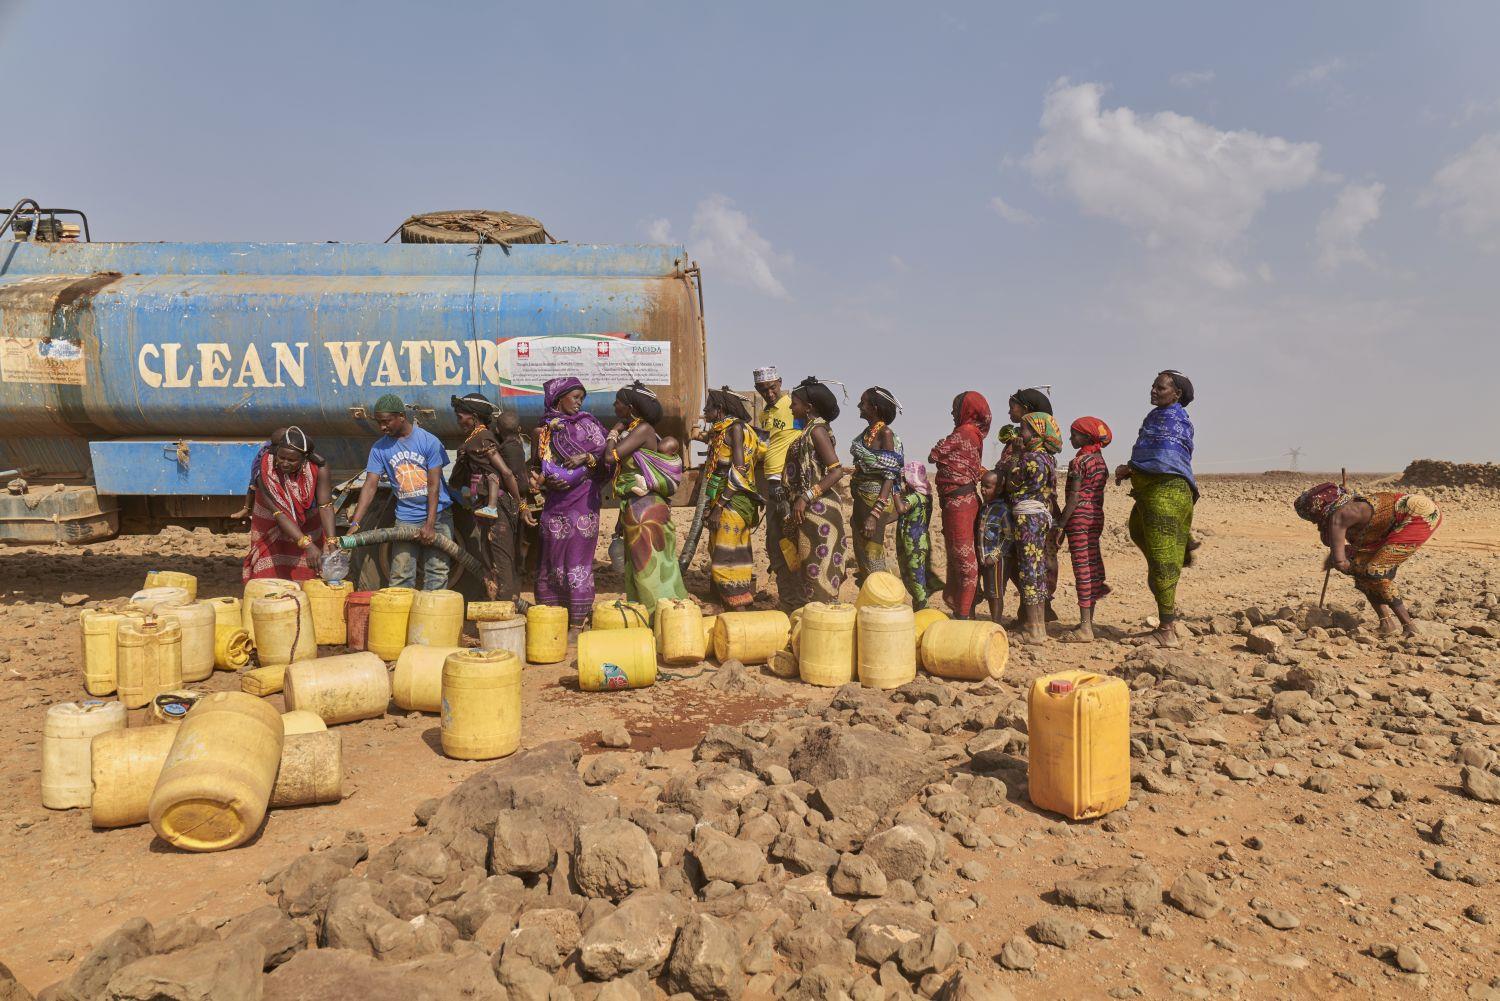 Ein Tanklaster liefert Trinkwasser für die Menschen in Kenias Dürregebiet.